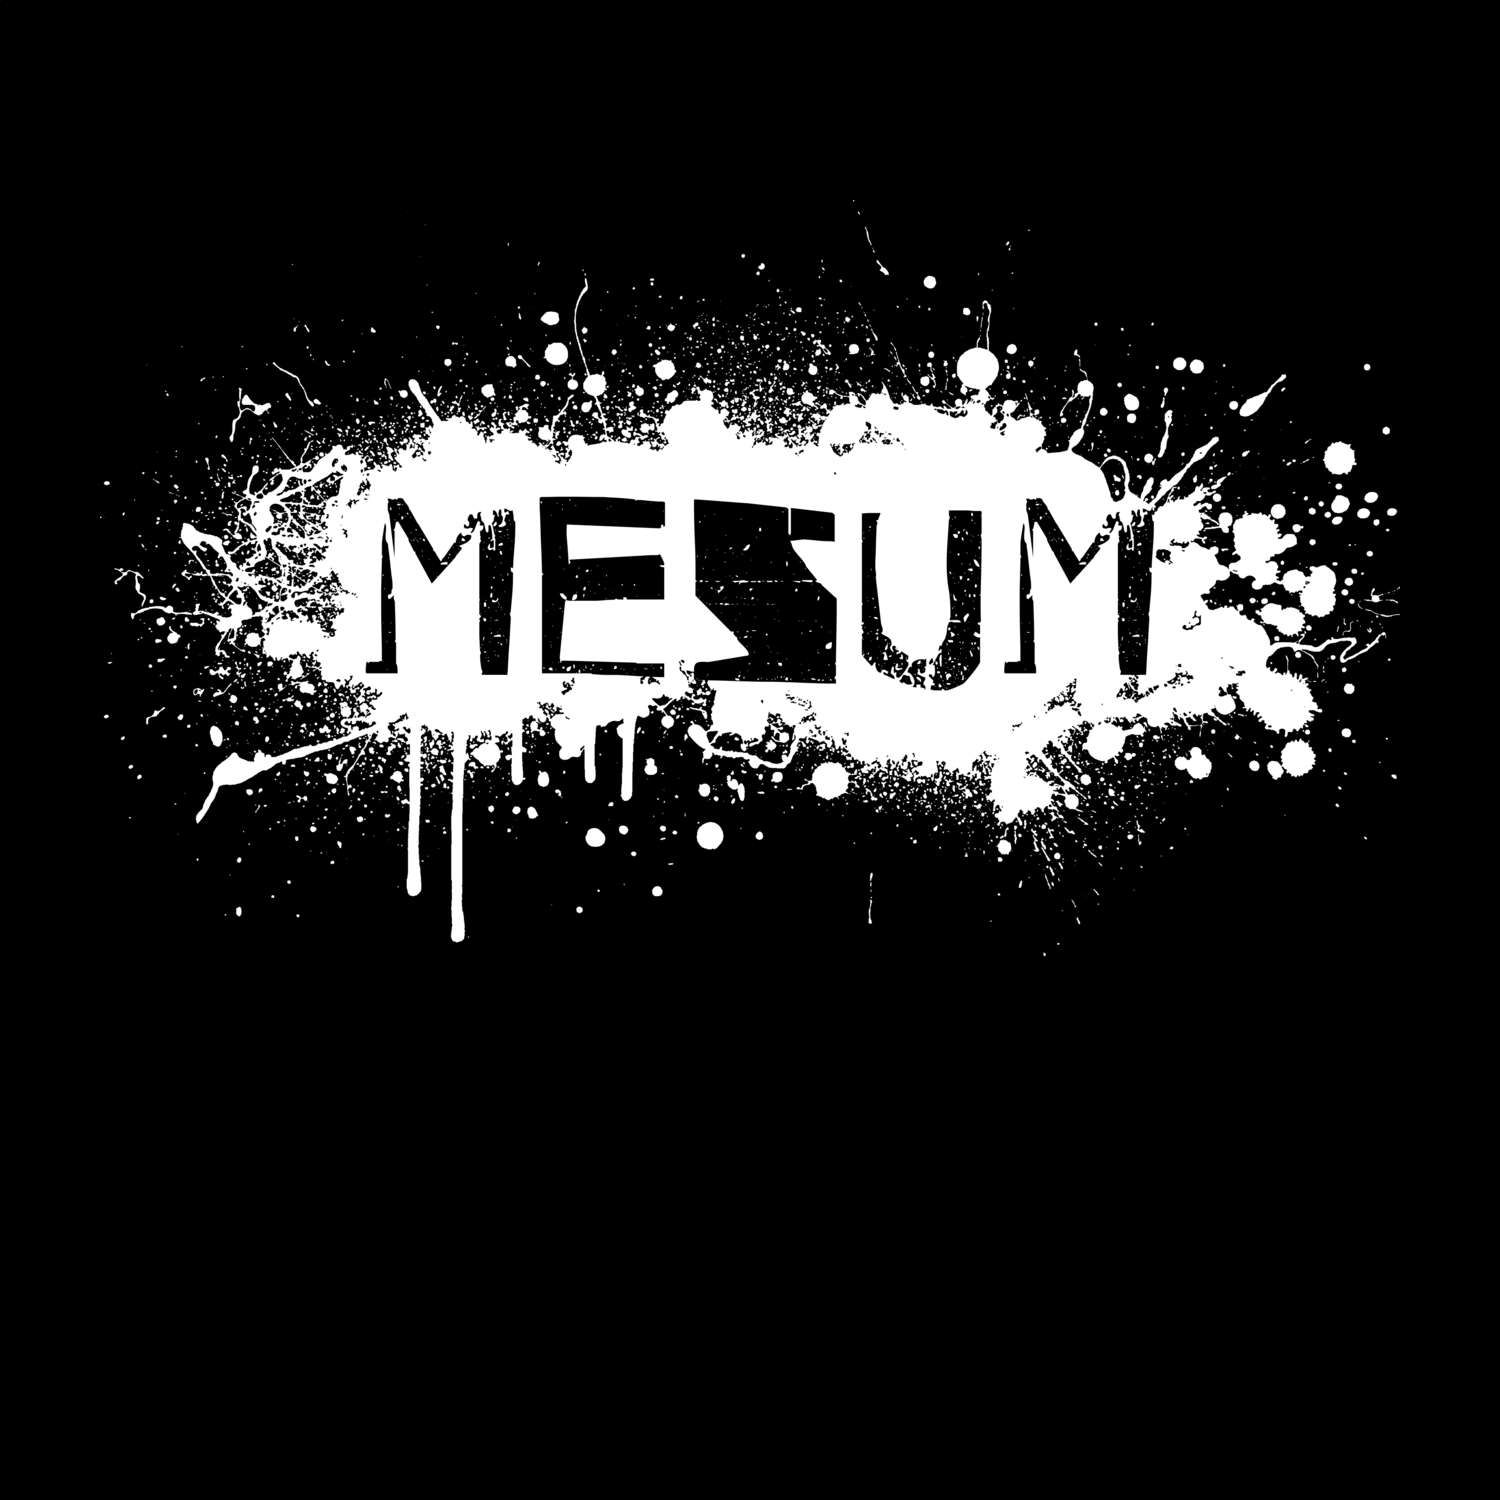 Mesum T-Shirt »Paint Splash Punk«